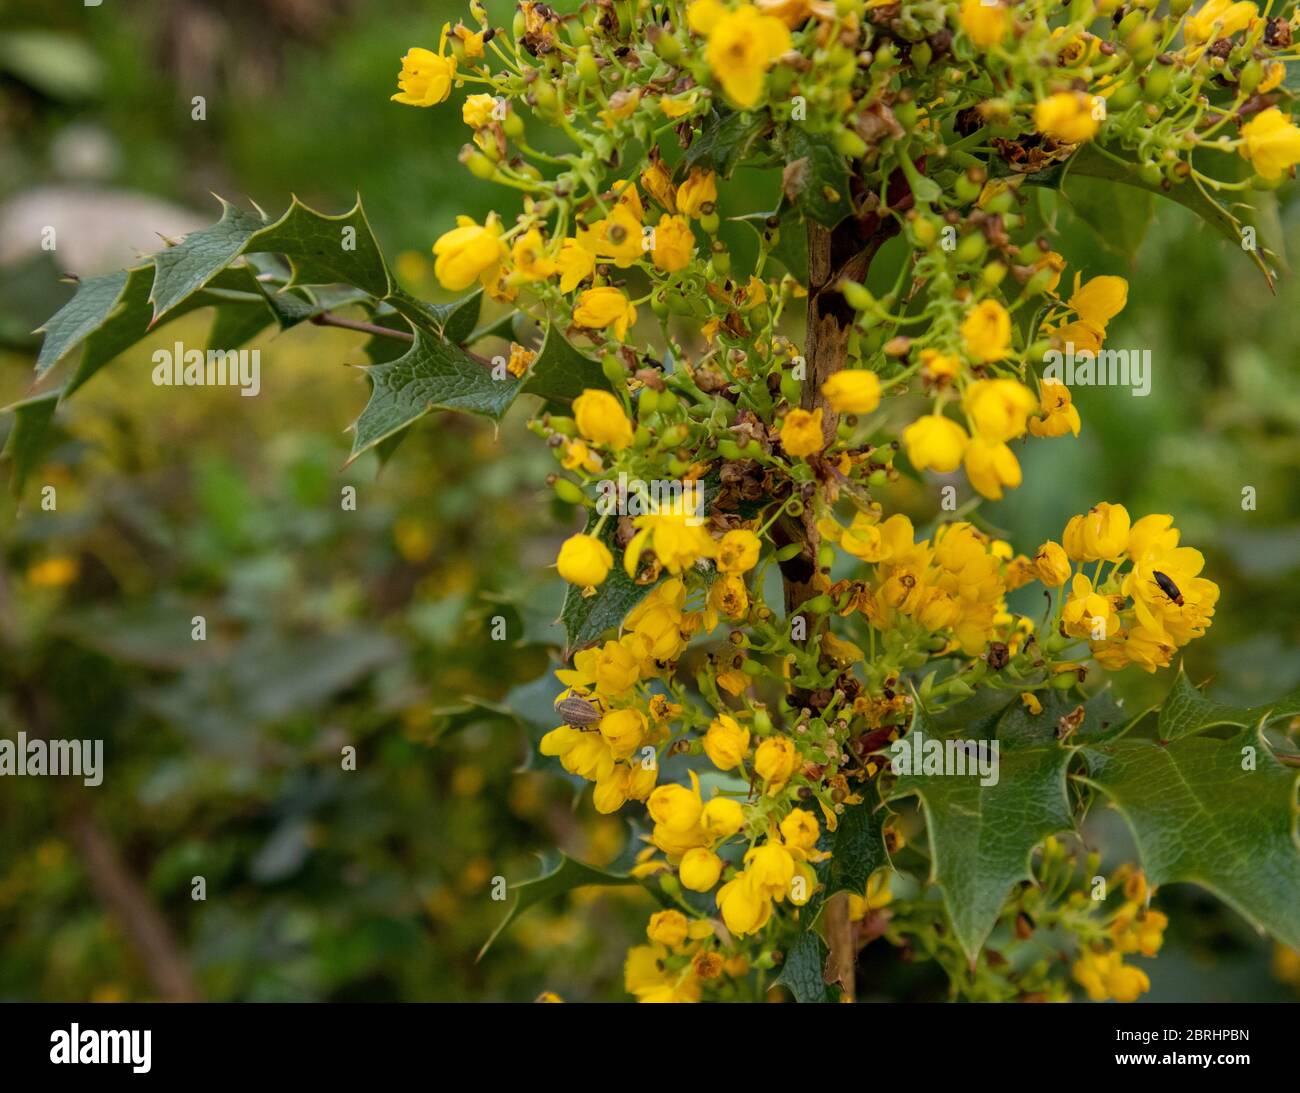 Mahonia aquifolium is a species of flowering plant. Stock Photo